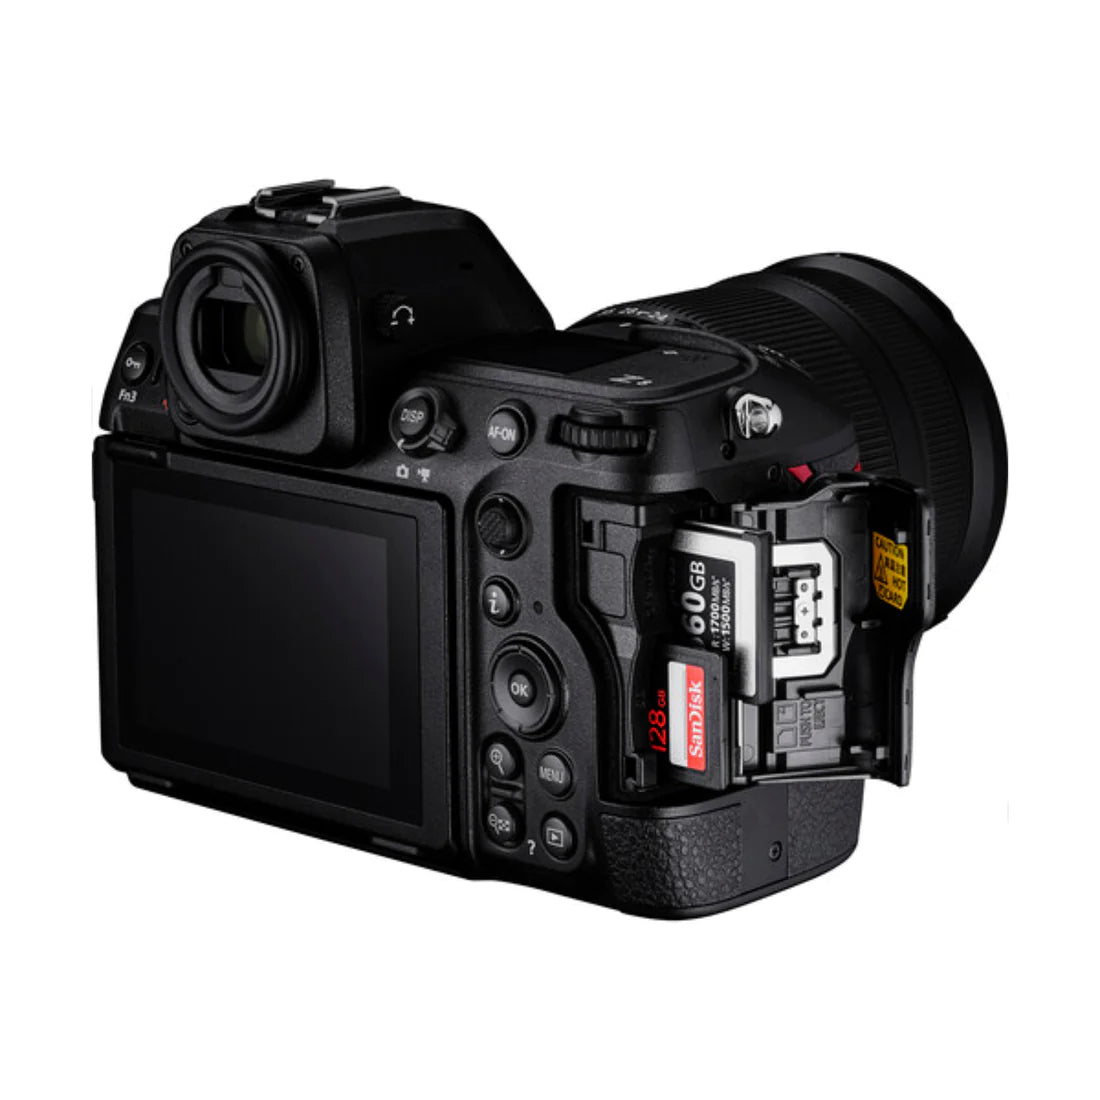 Nikon Z8 Mirrorless Camera Kit